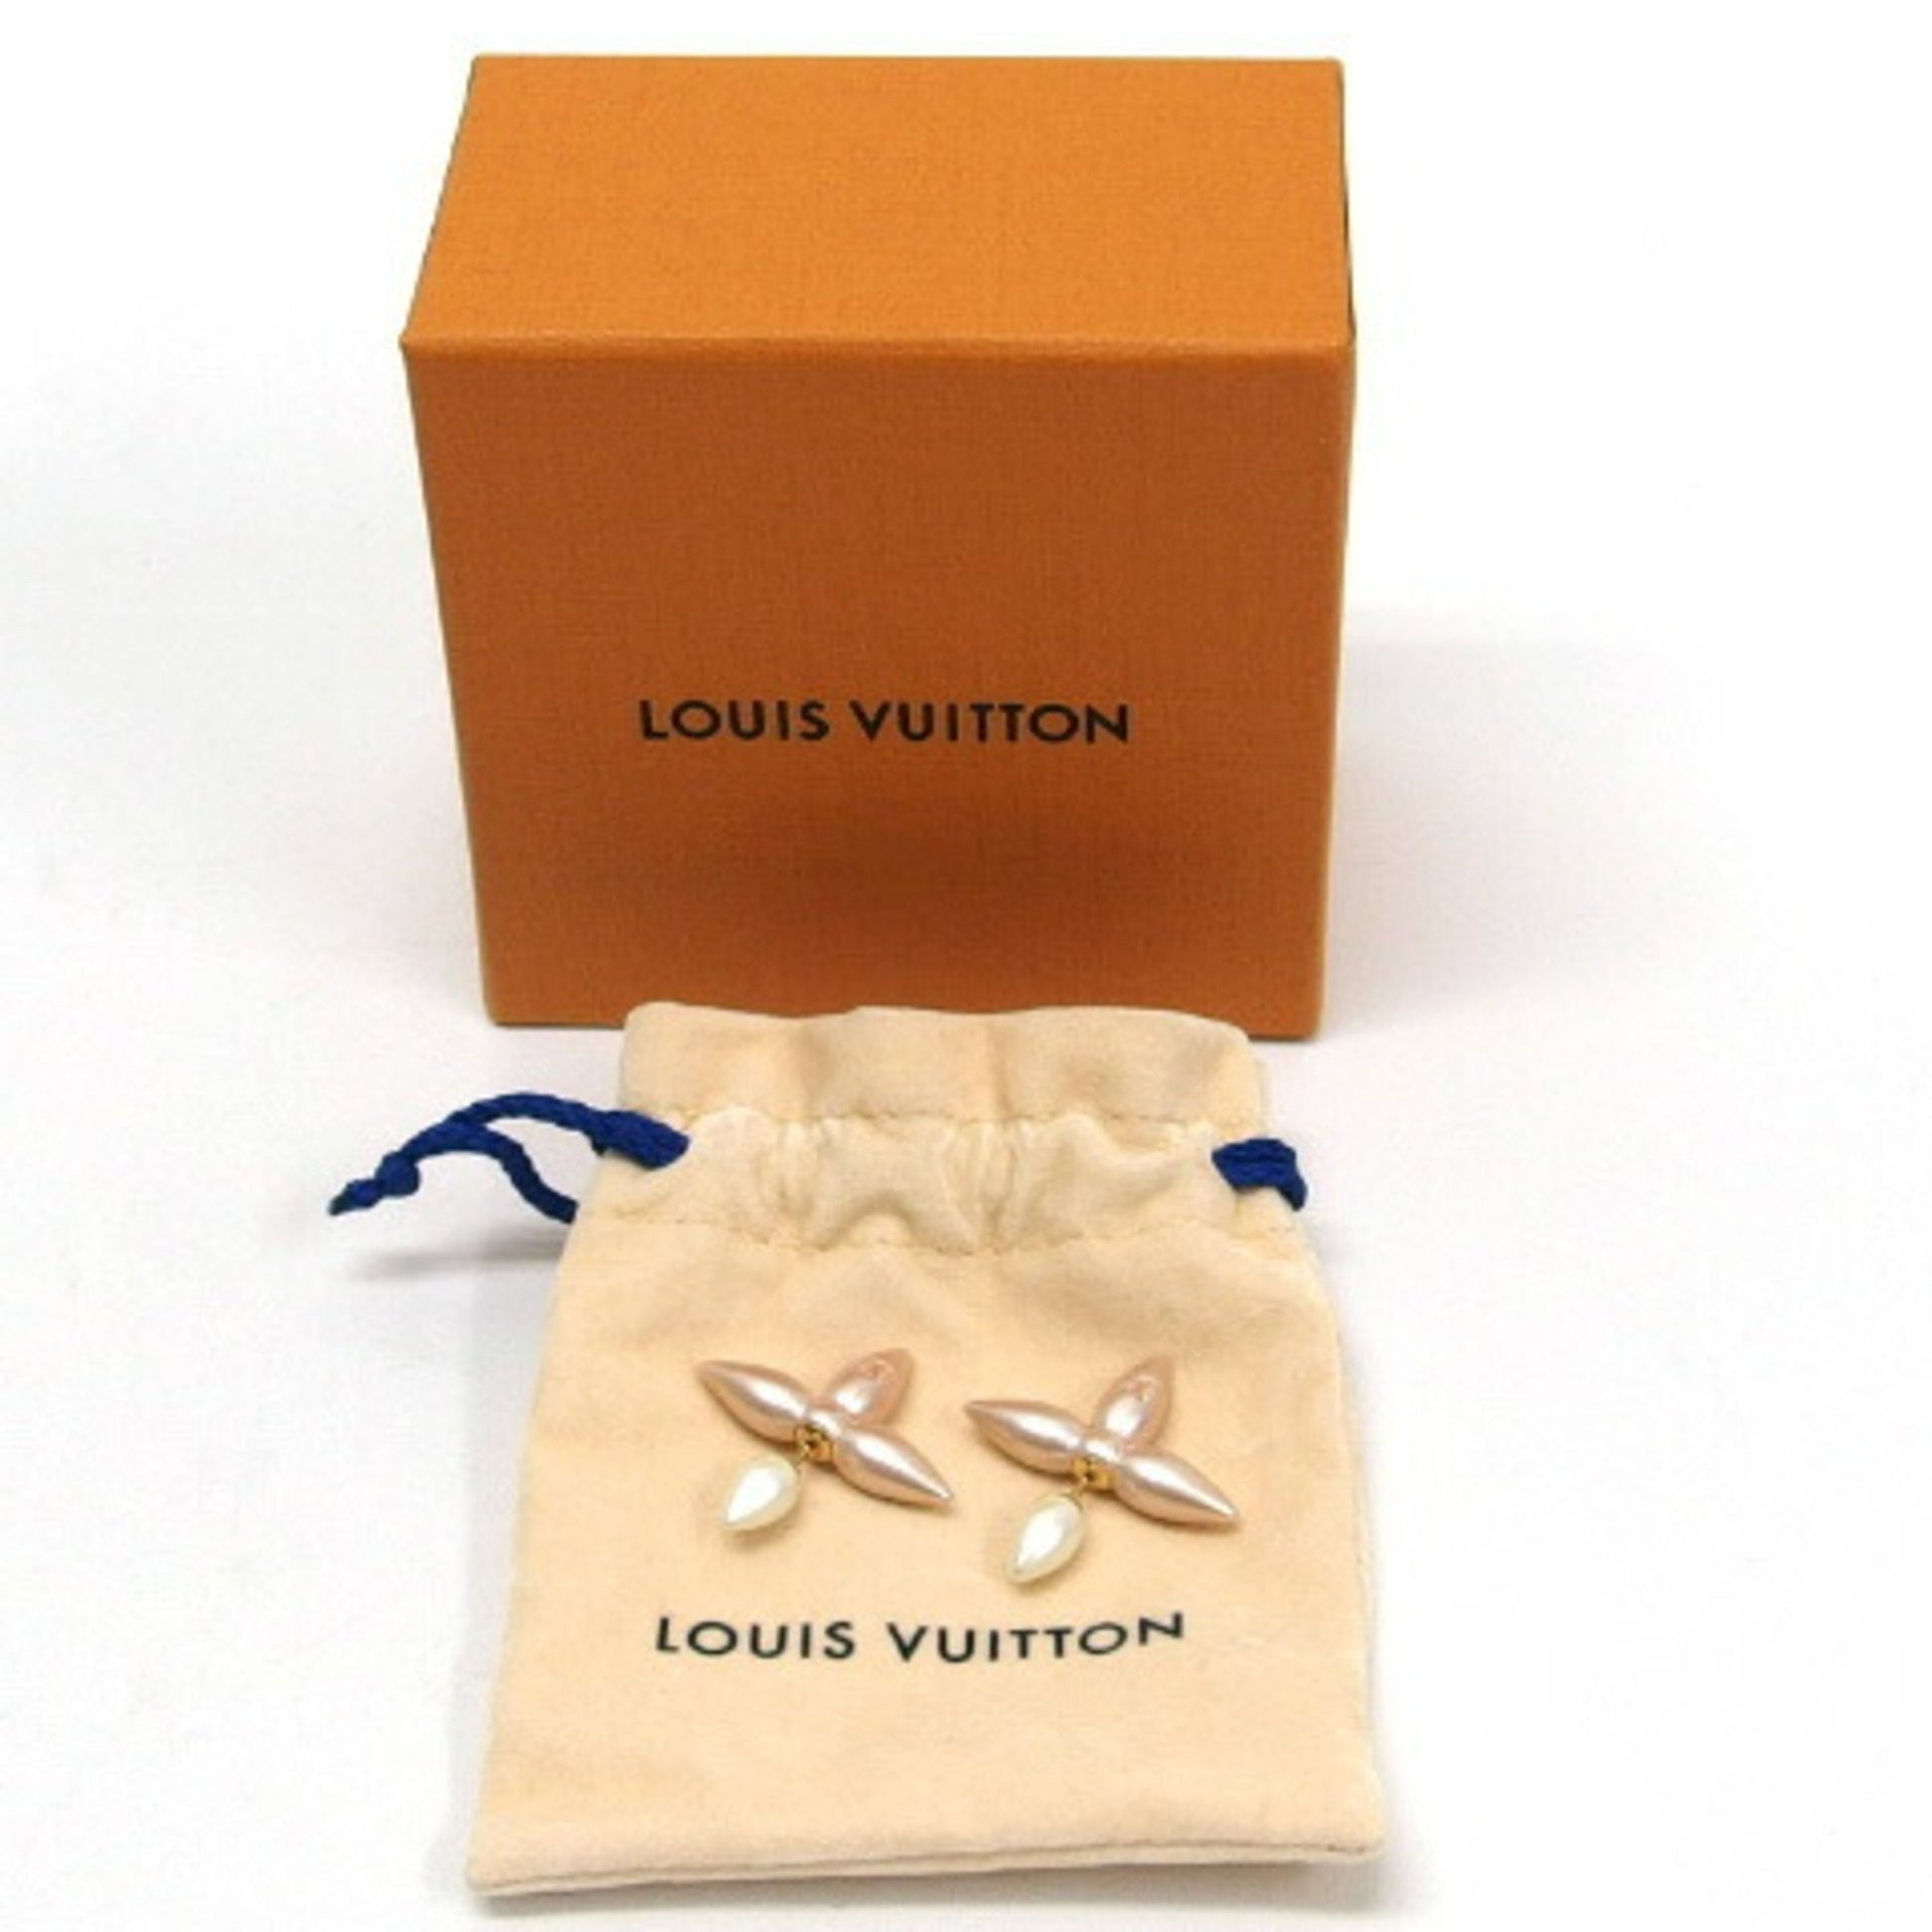 It's the little #Louisette details.. ✨ @louisvuitton earrings